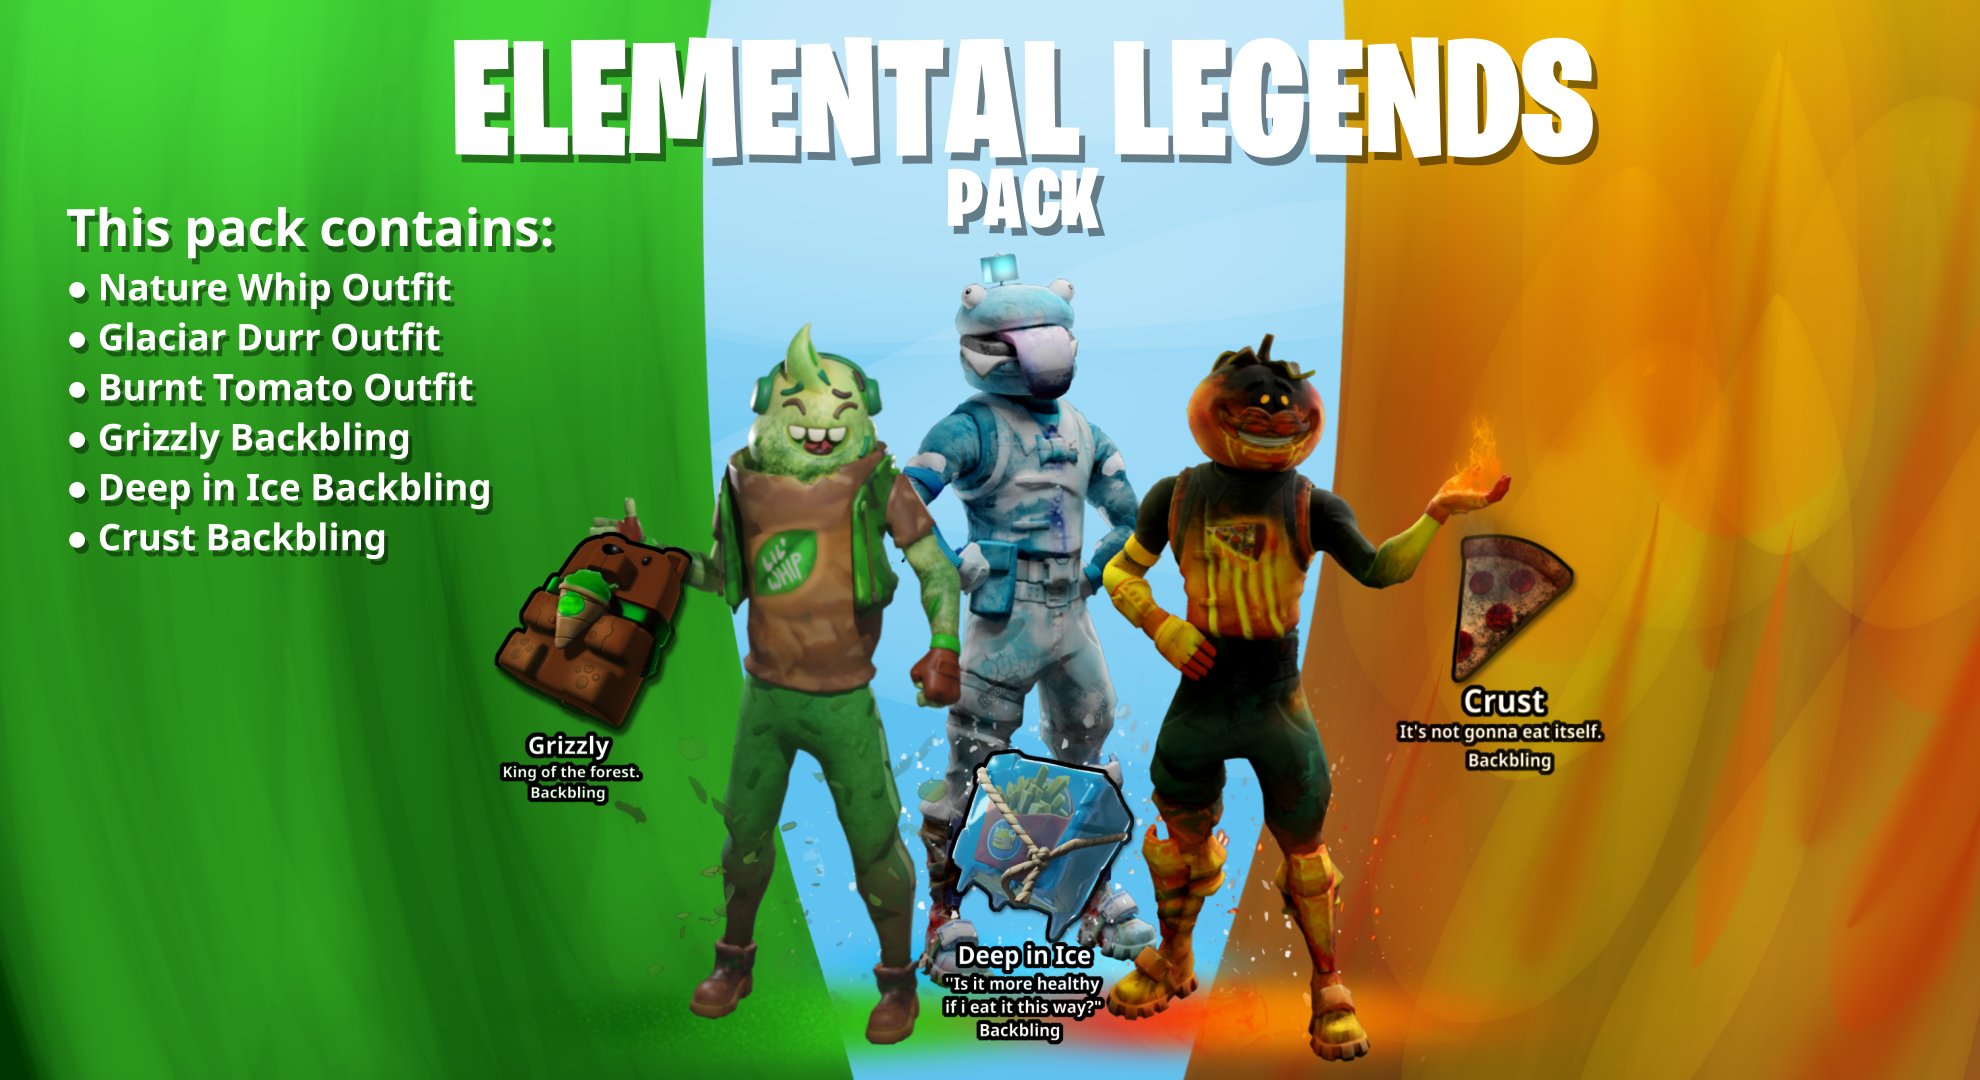 StreakyFly Fortnite Leaks on Twitter: "Elemental Legends Pack Concept! (via u/KinaKingy) #Fortnite https://t.co/OL3xlet1VF" Twitter